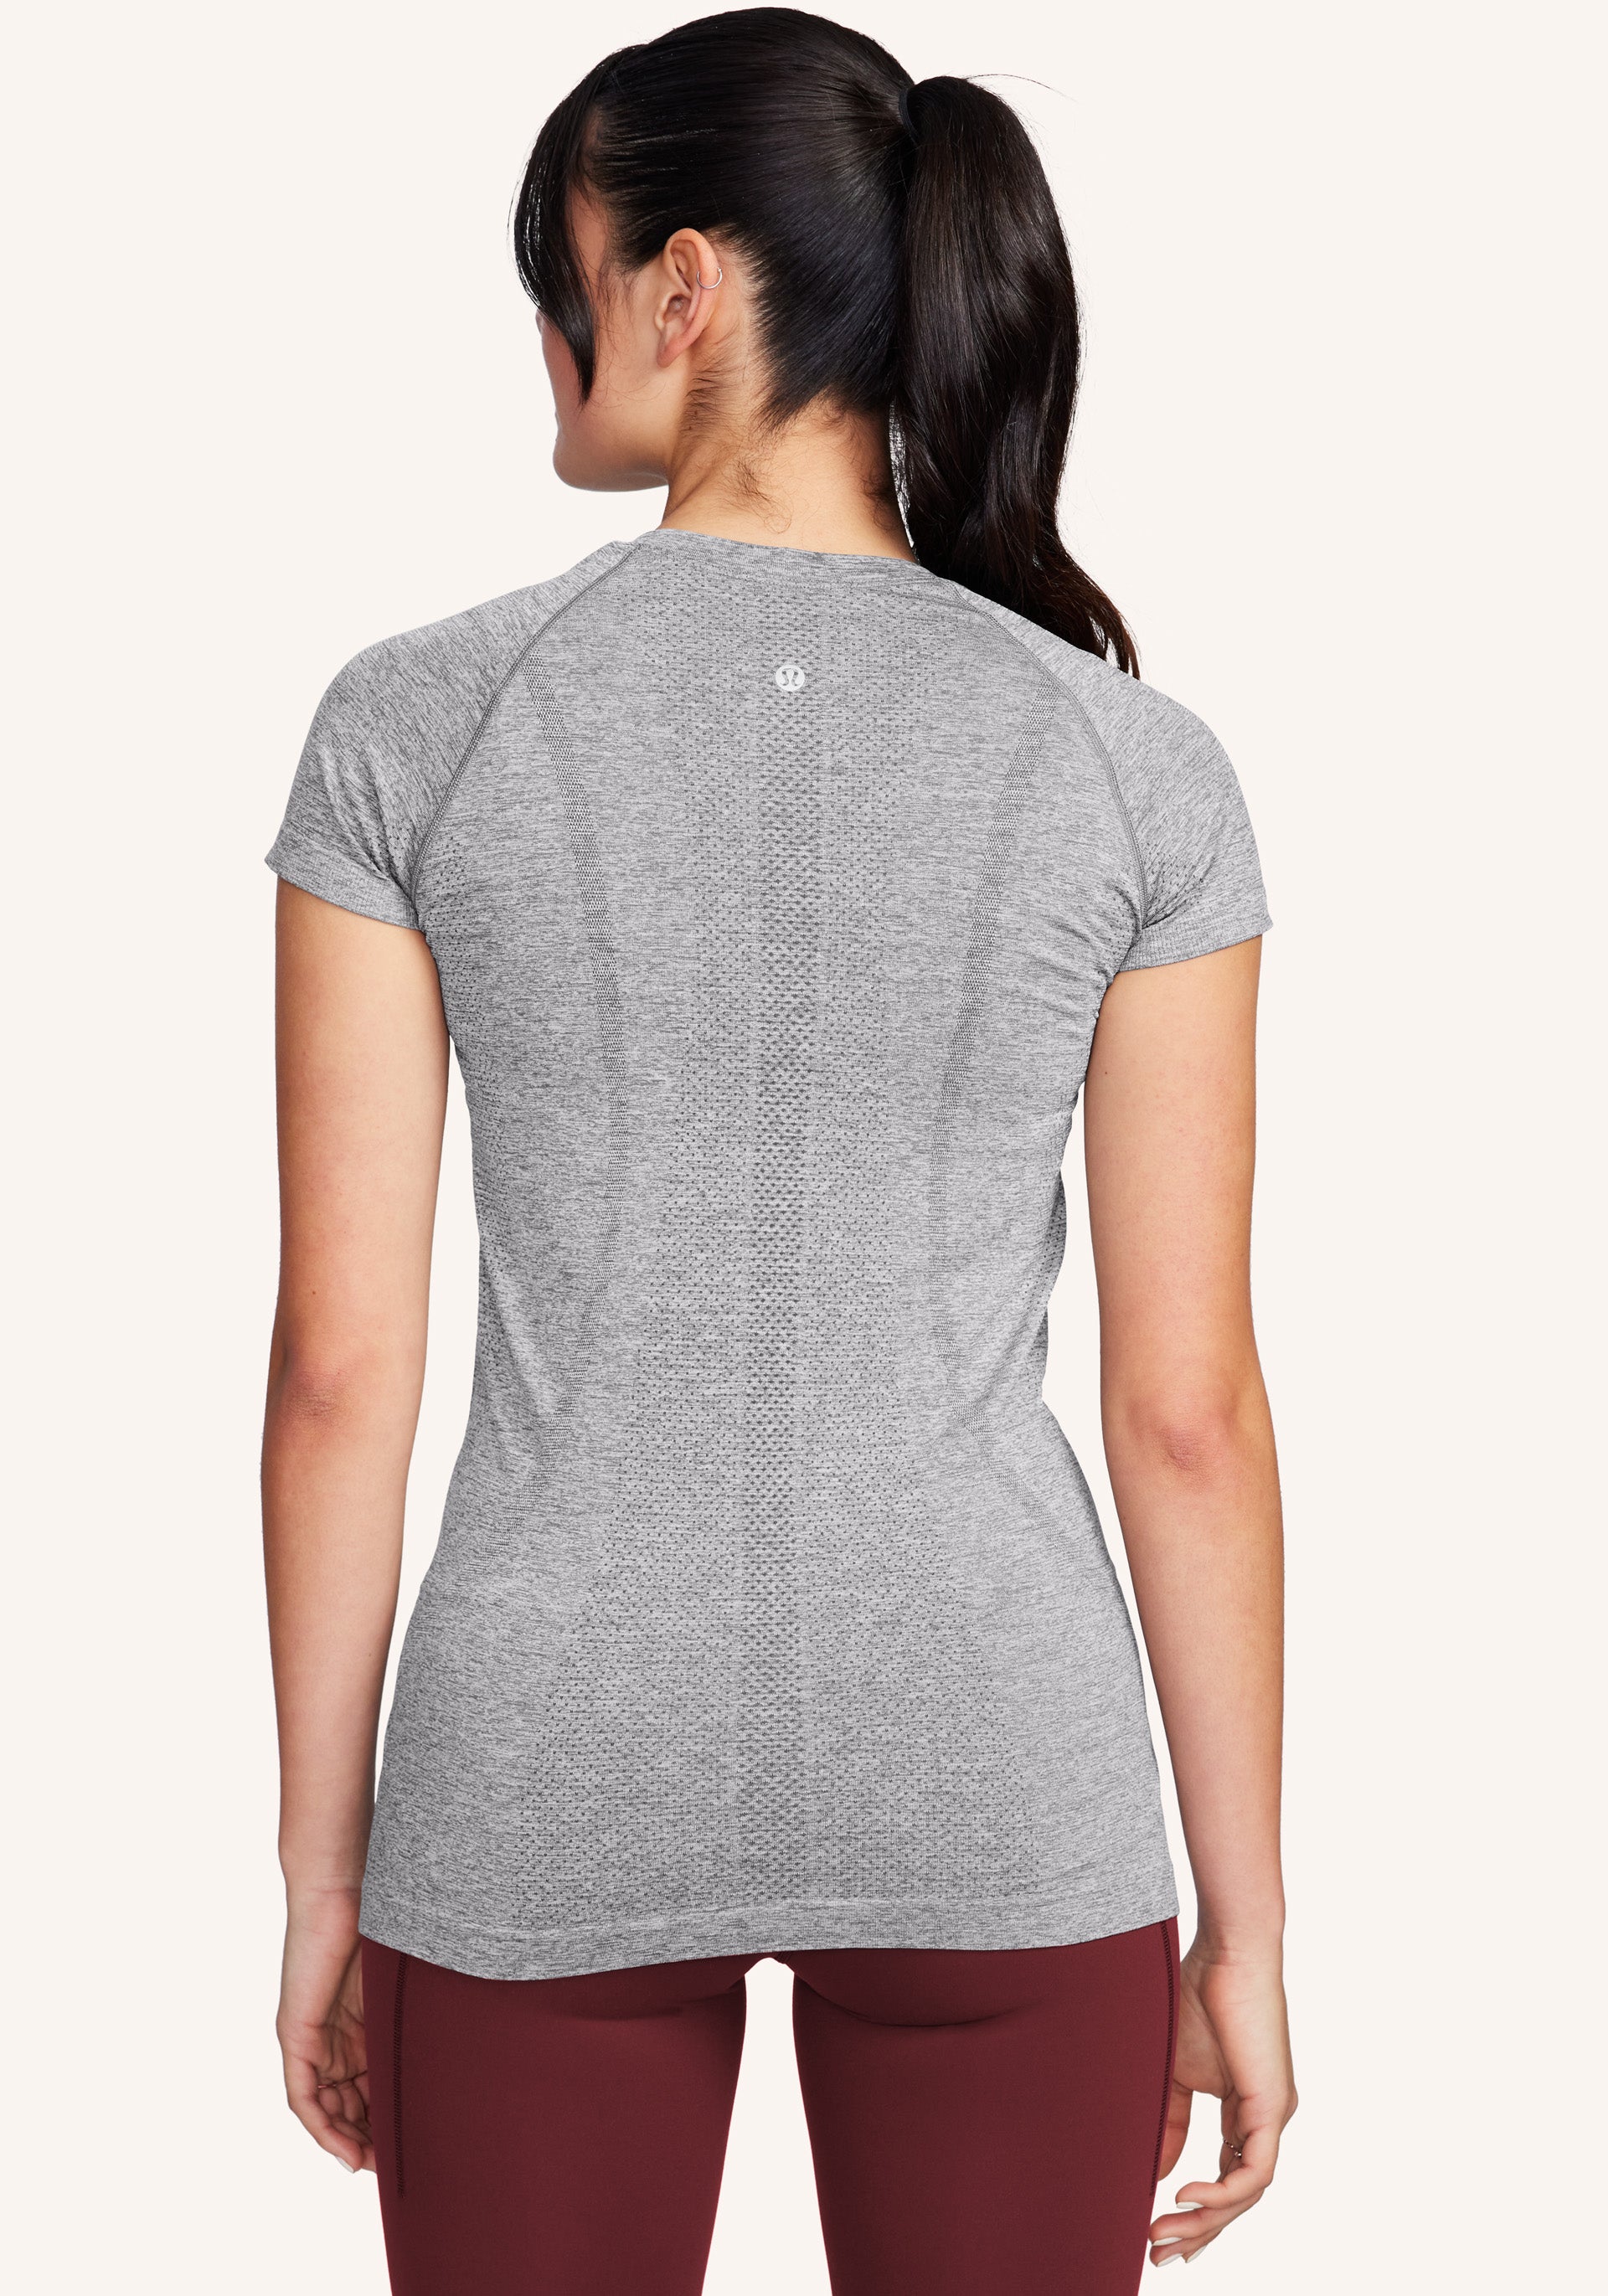 lululemon Swiftly Tech Short-Sleeve Shirt 2.0 - Slate/White | onebodyla